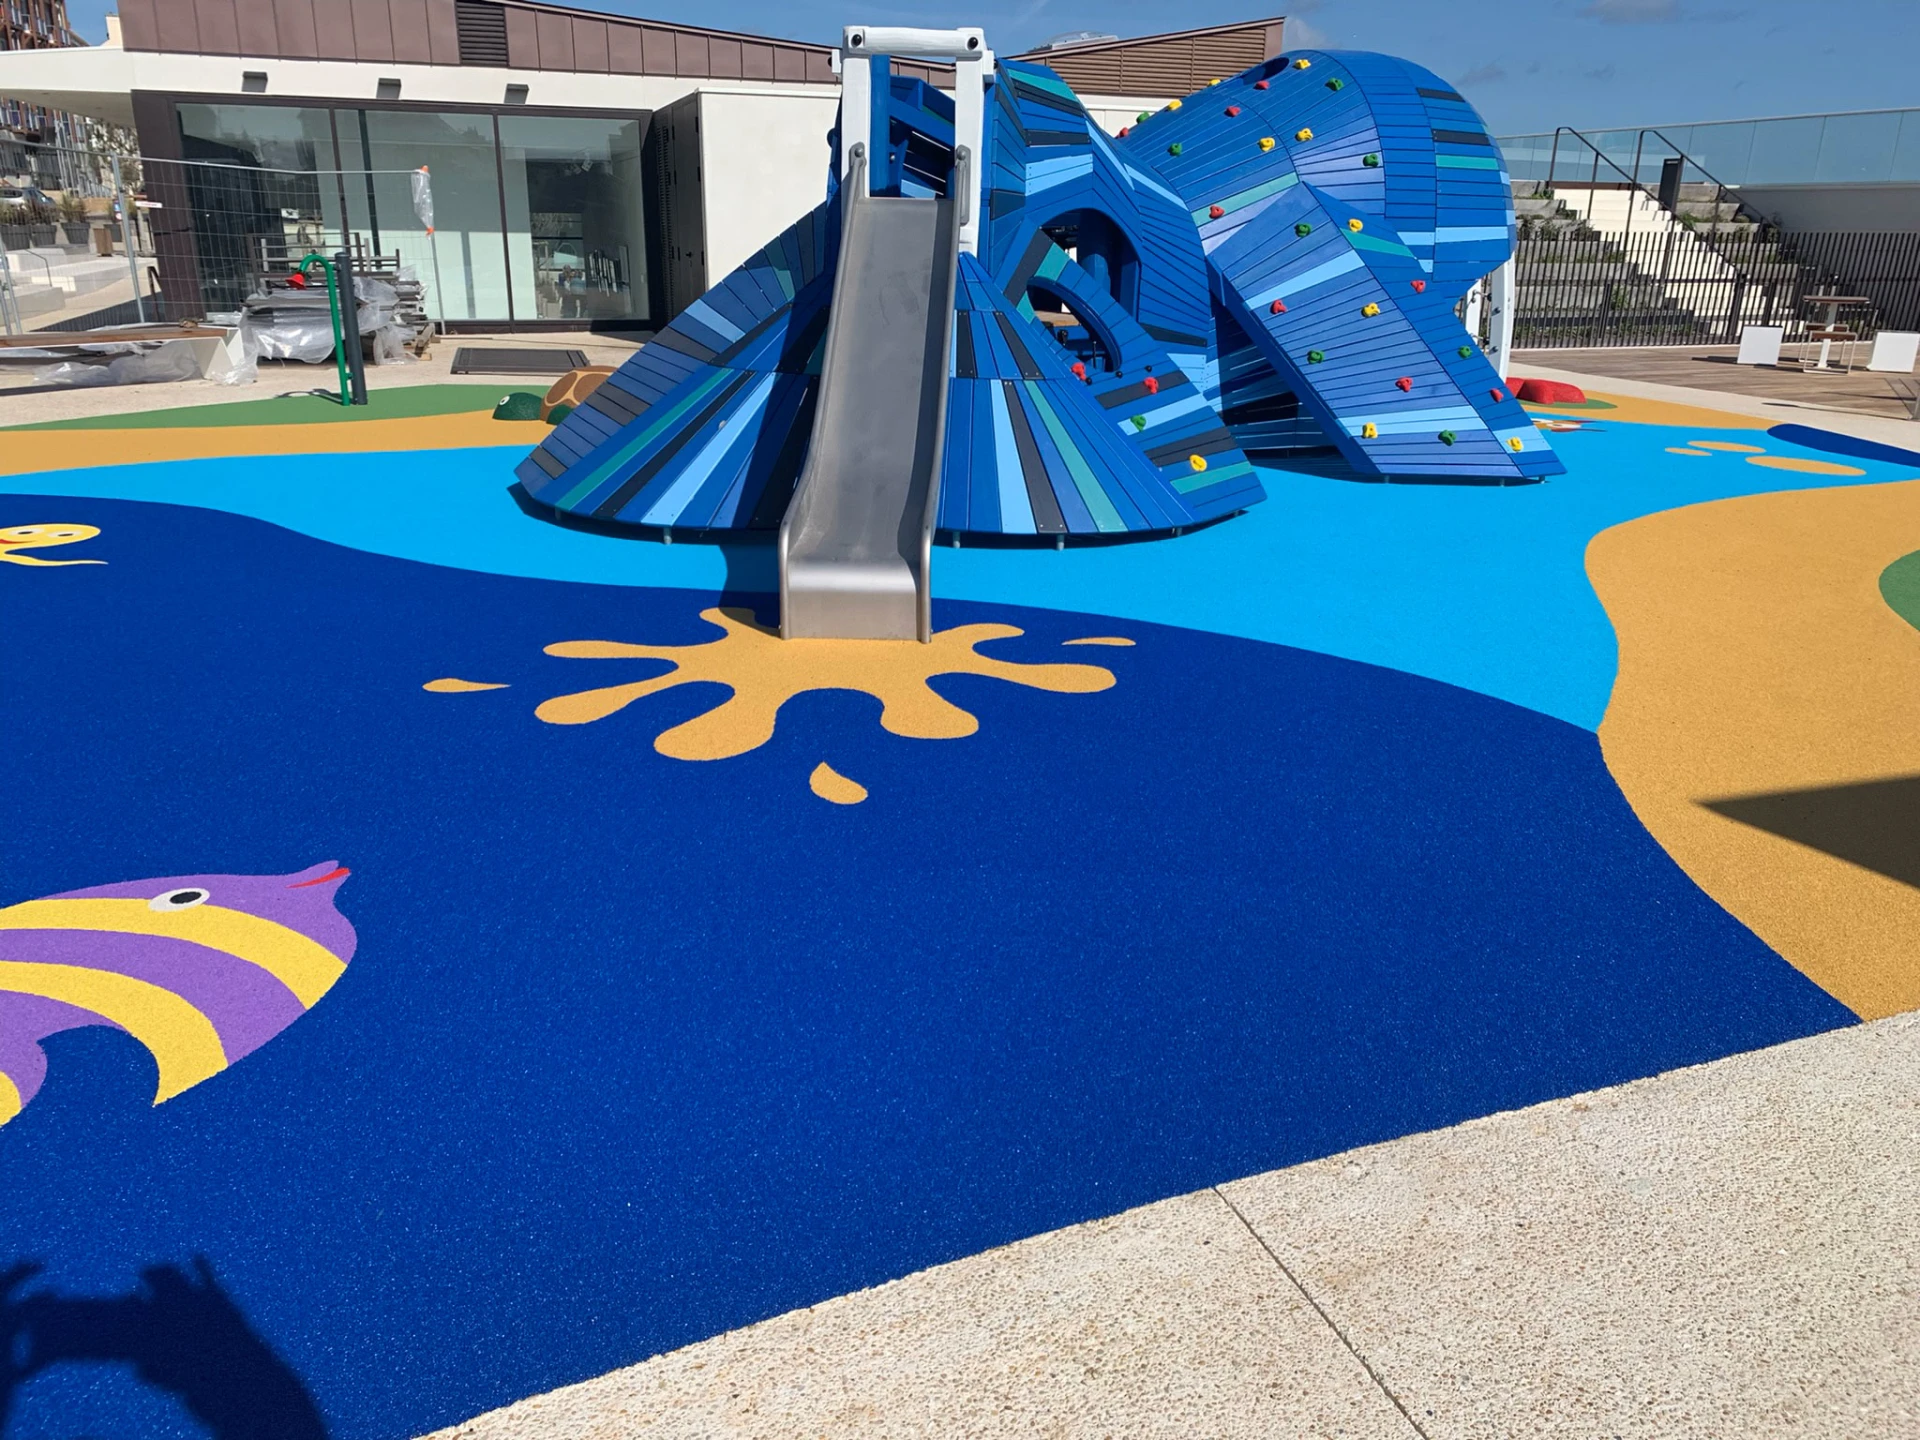 pavimento para parques infantiles con temática submarina